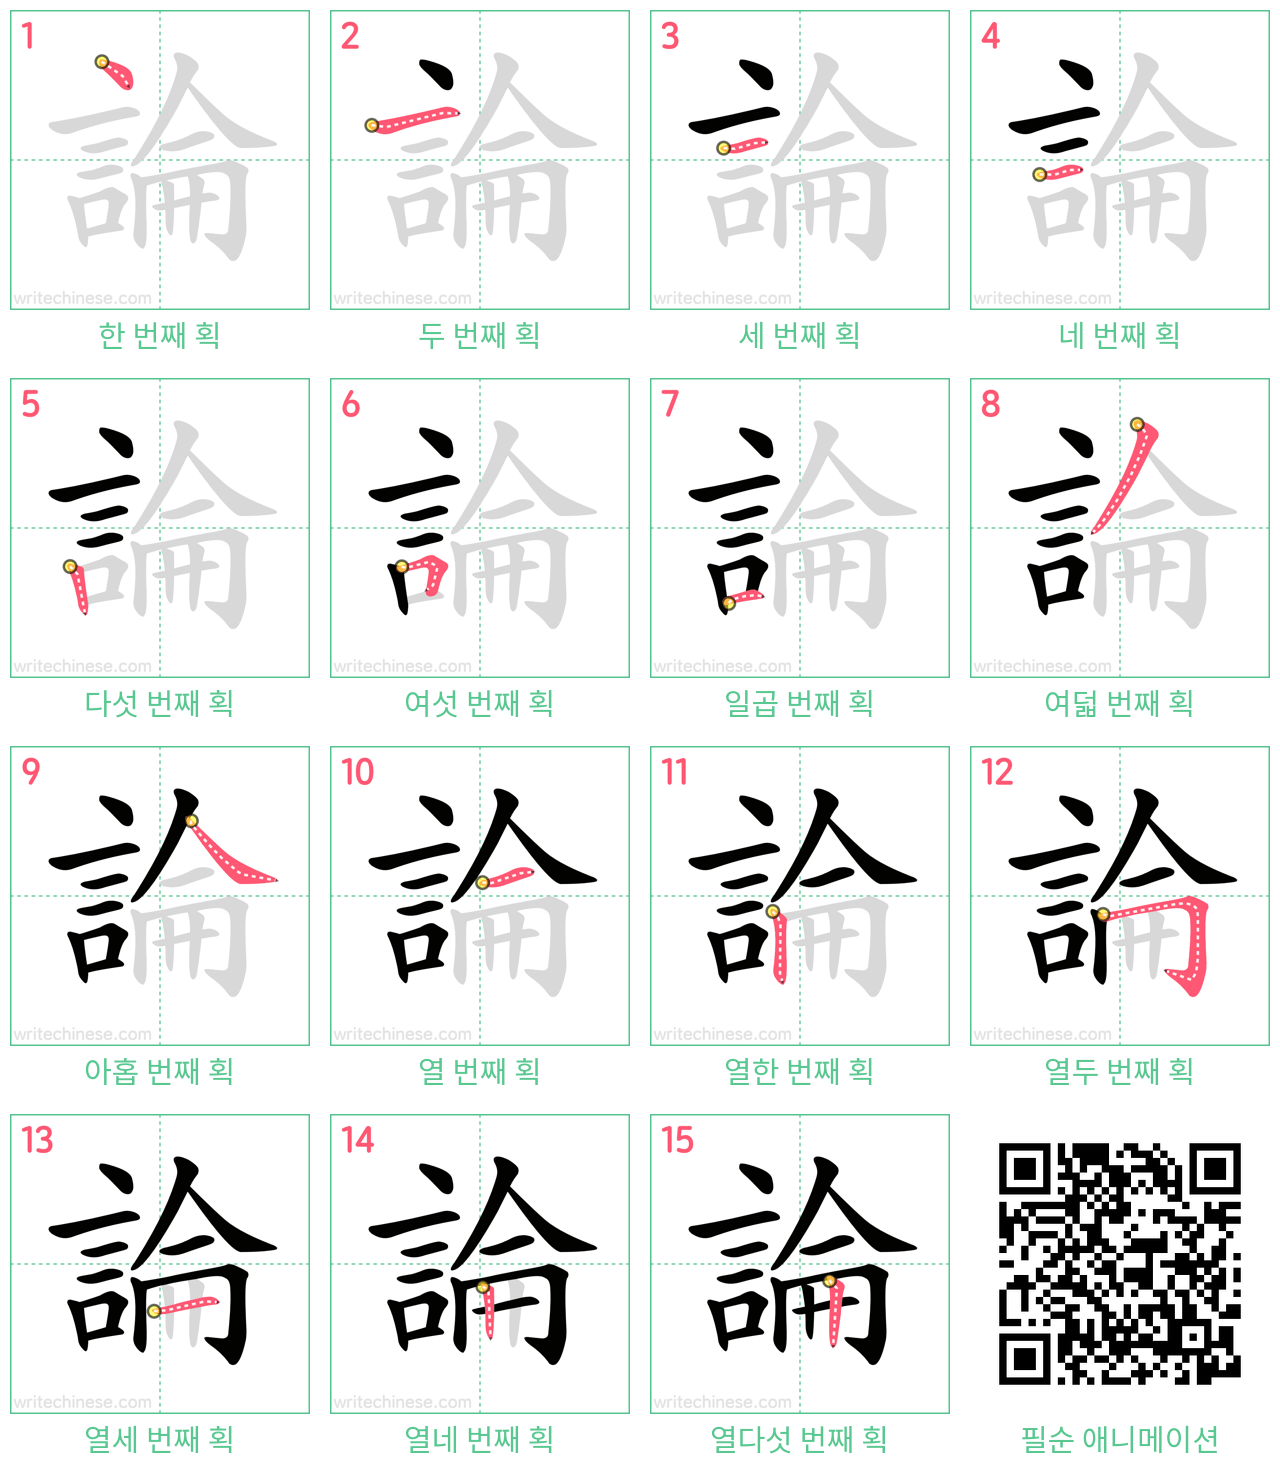 論 step-by-step stroke order diagrams